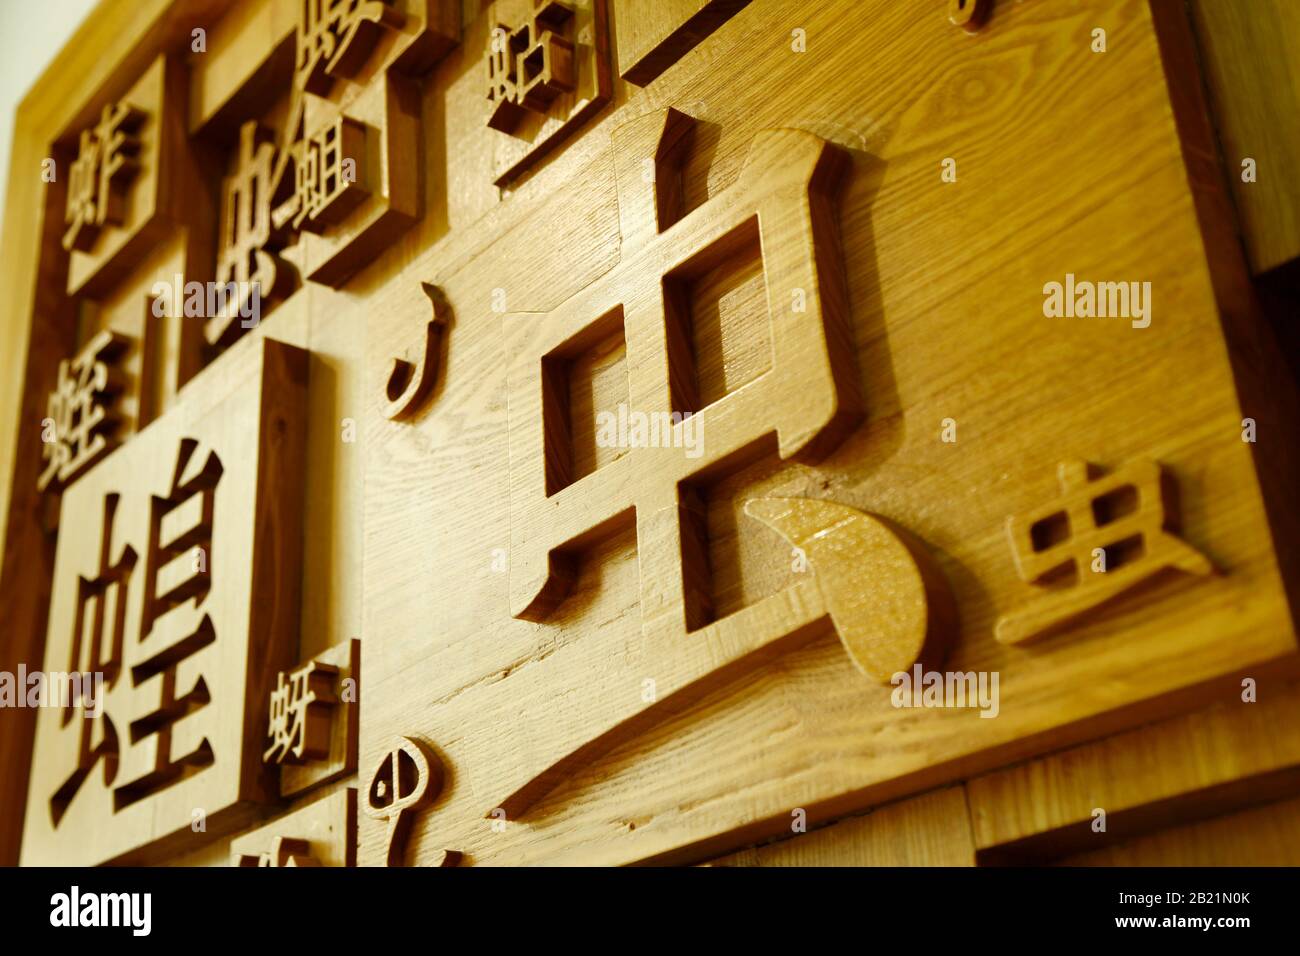 Chinesische Schriftzeichen auf der Tafel eingemeißelt Stockfotografie -  Alamy